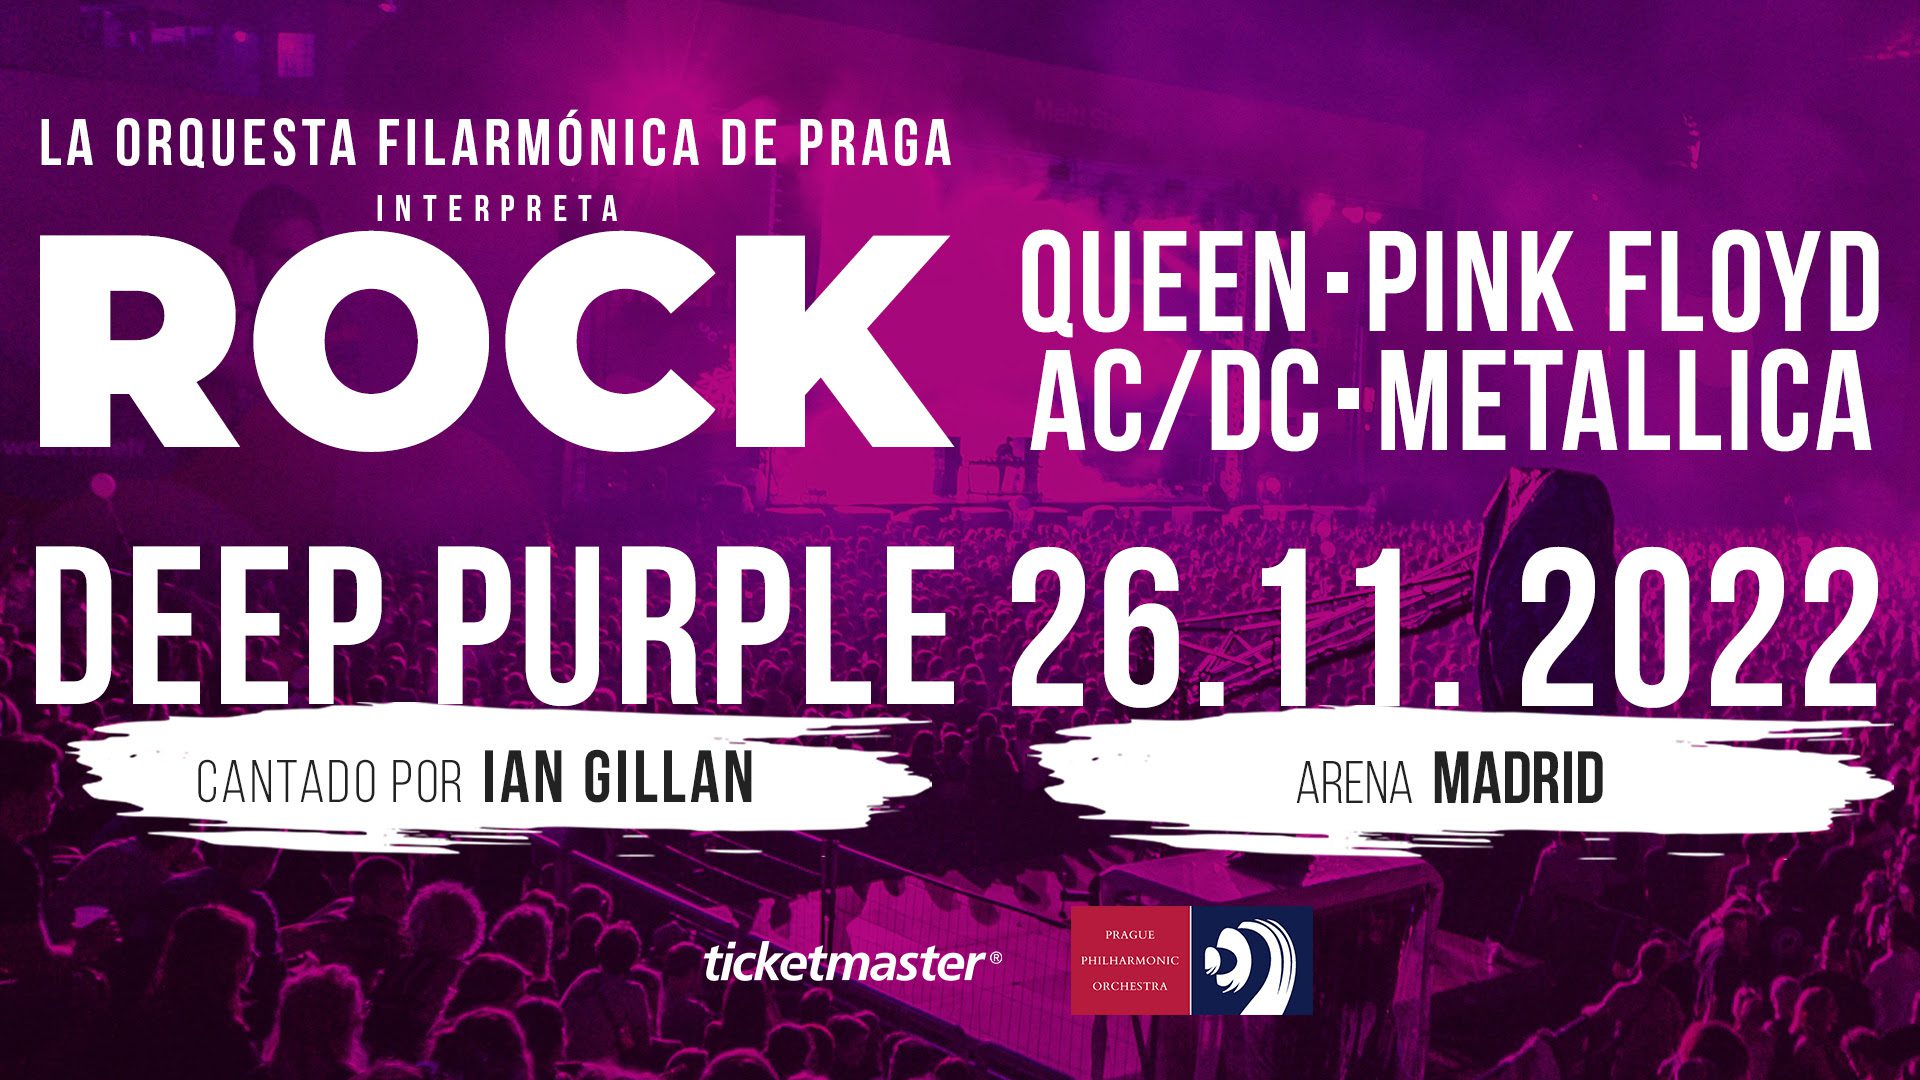 Ian Gillan de Deep Purple junto a la Orquesta Filarmónica de Praga en Madrid